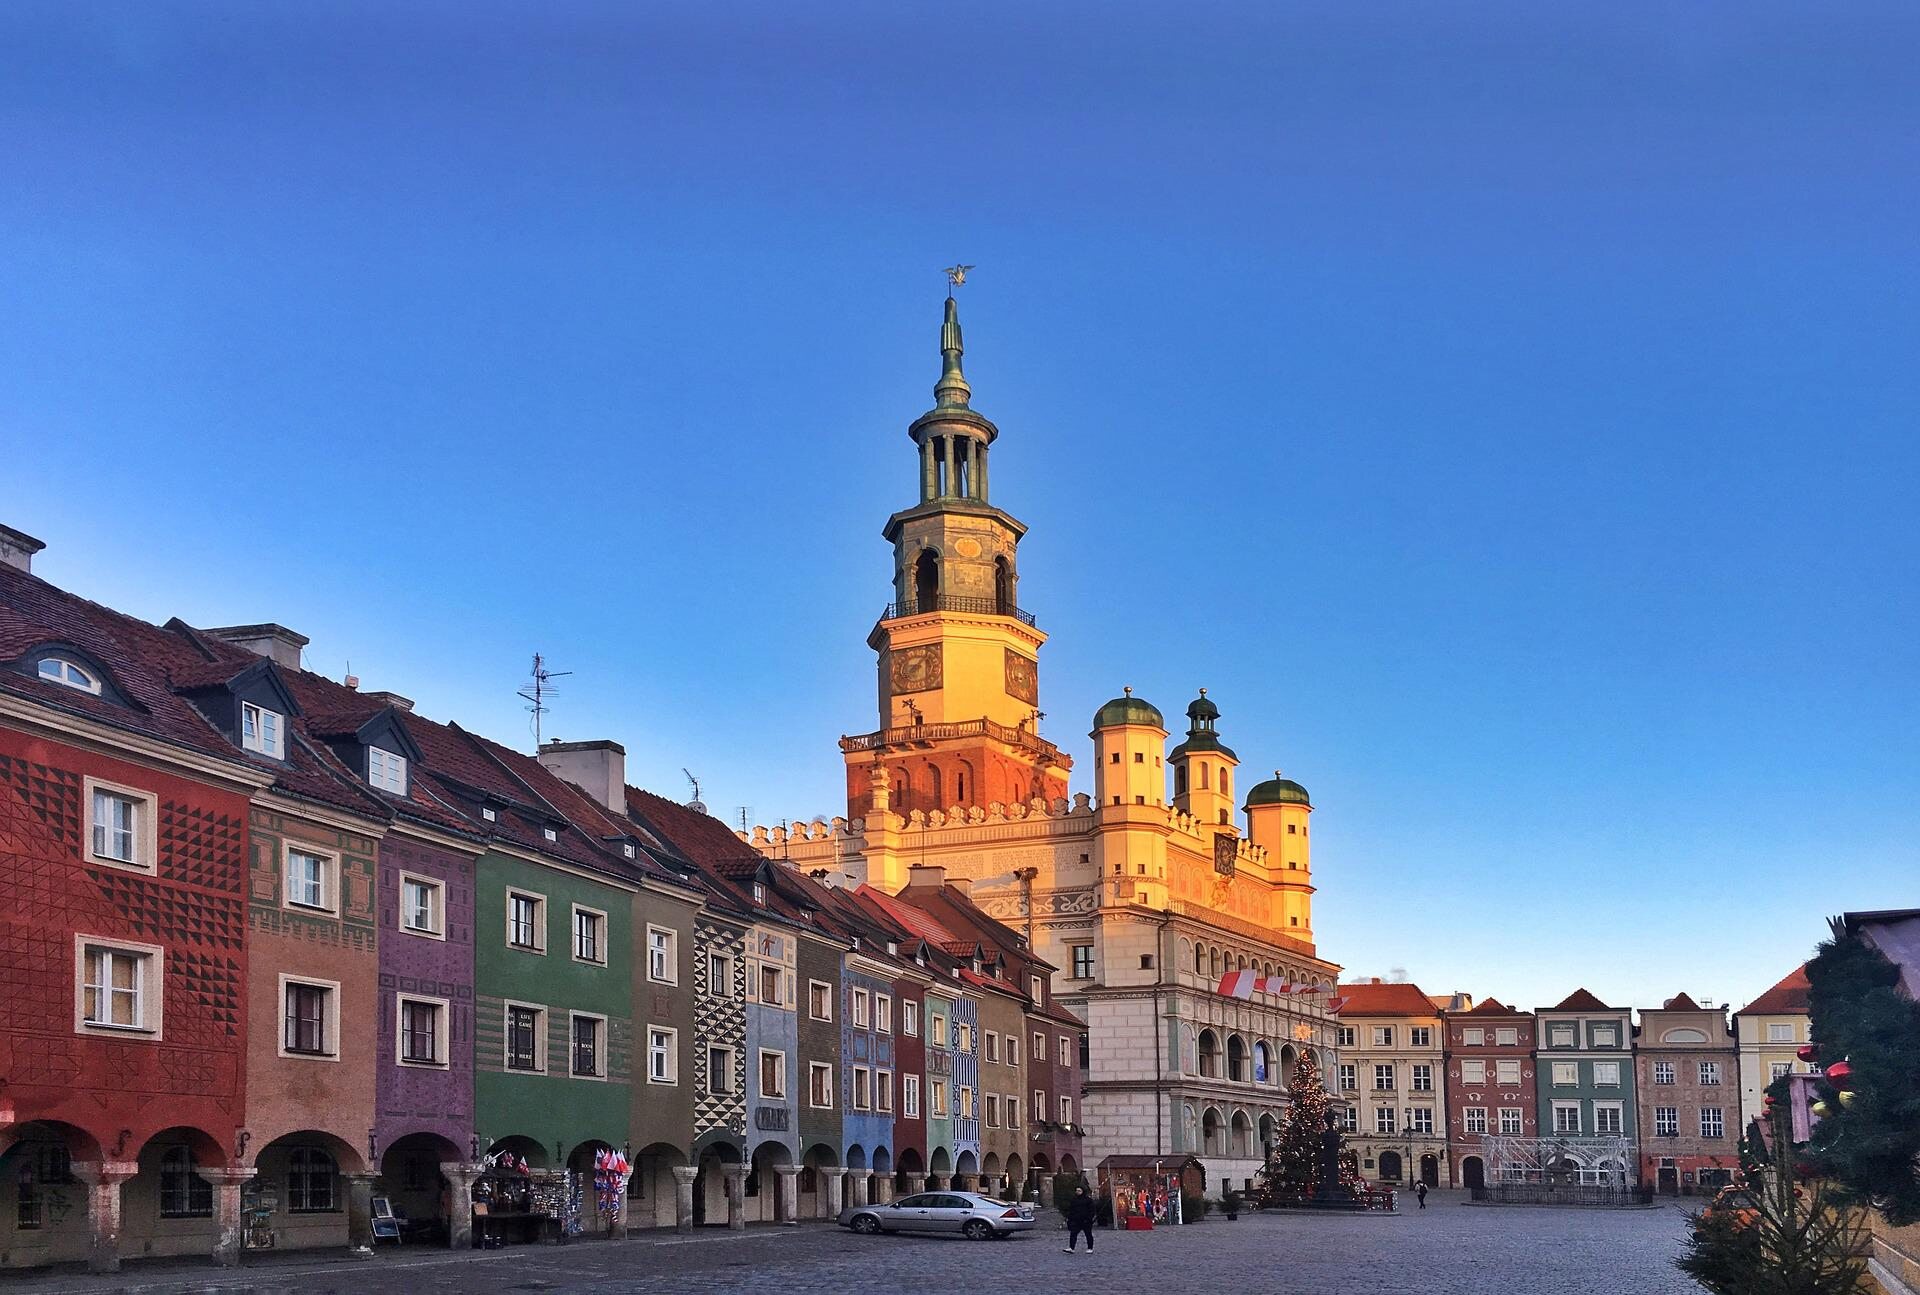 Jak mówi legenda, skąd wzięły się koziołki na poznańskiej wieży ratusza?